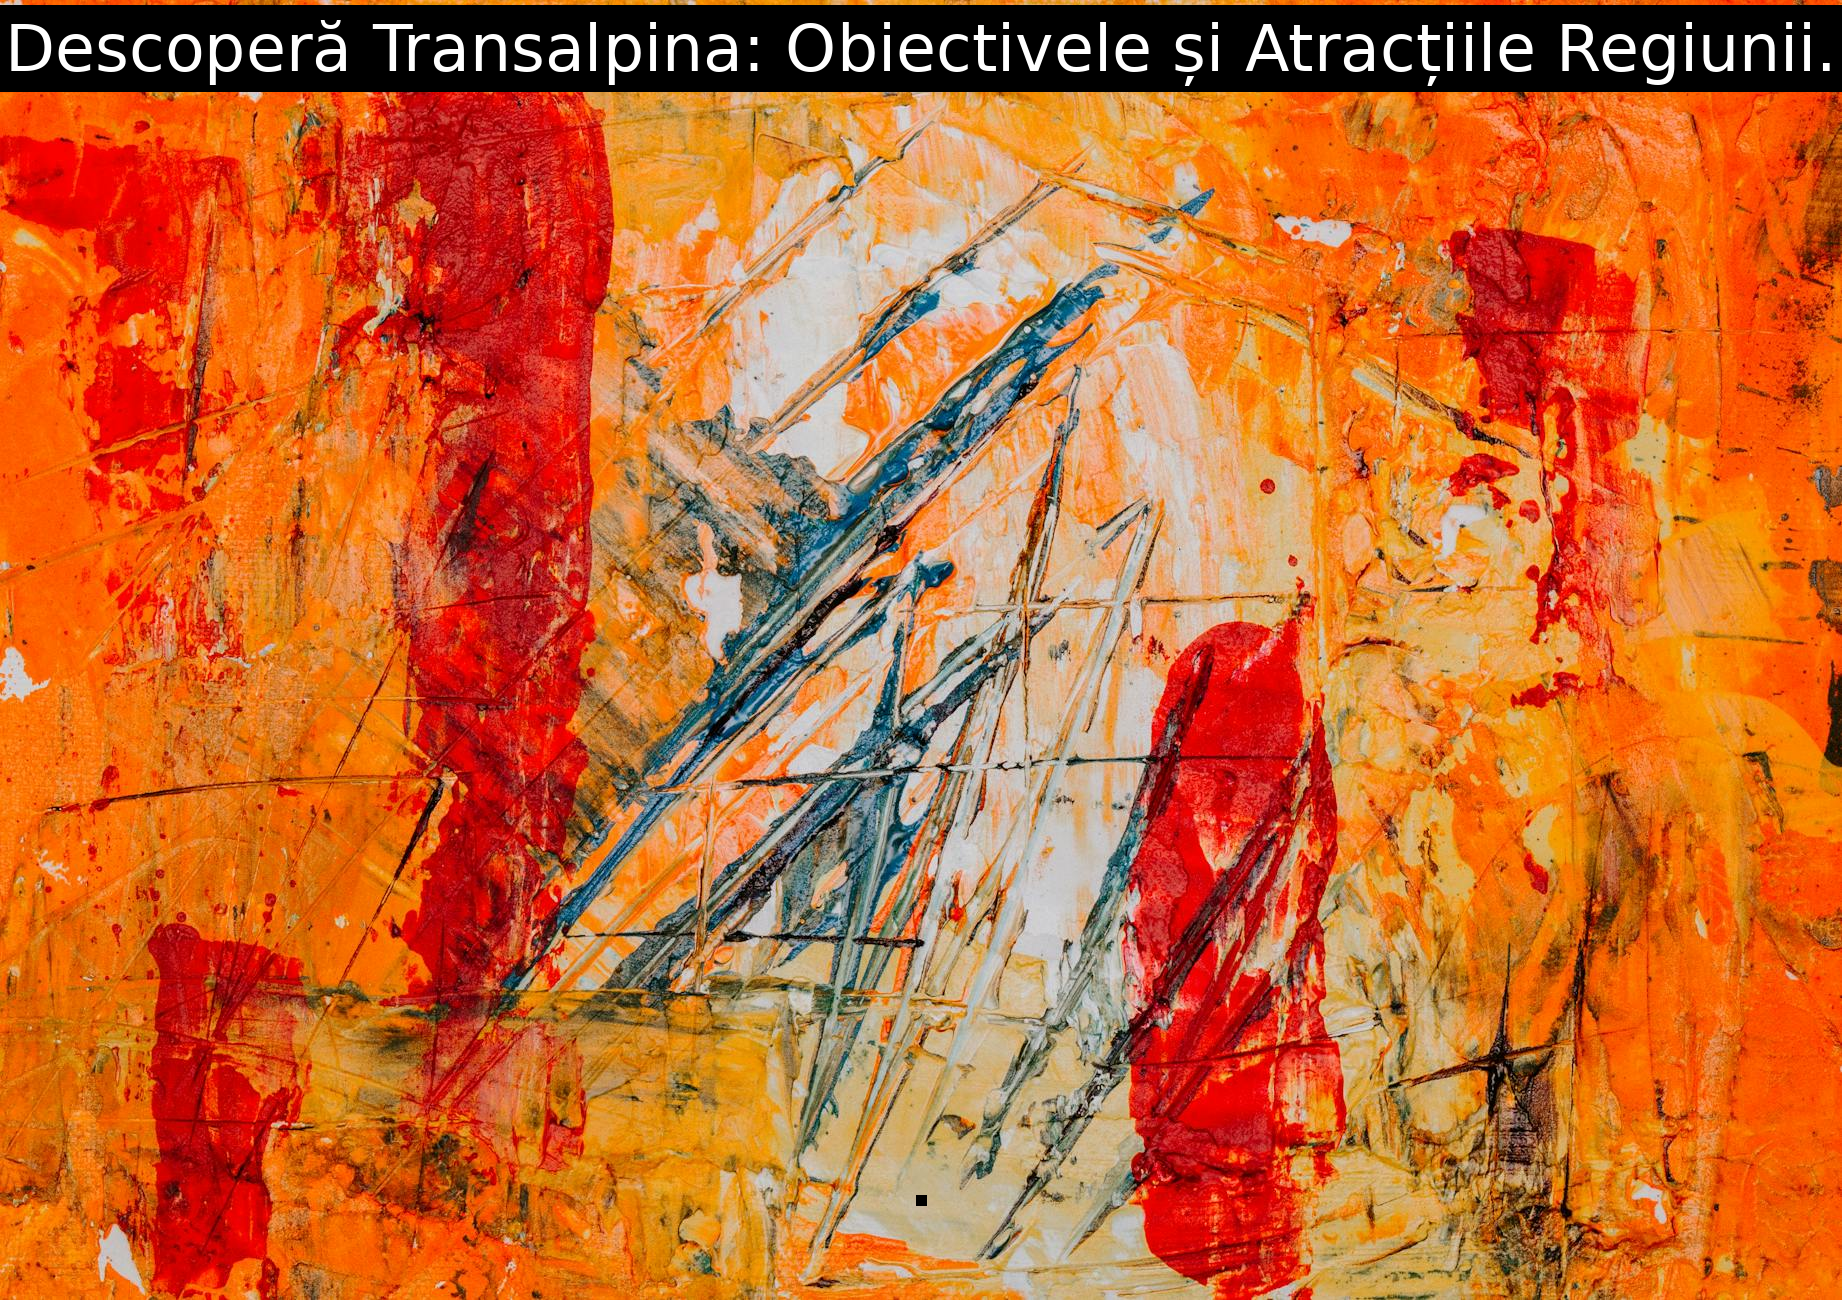 Descoperă Transalpina: Obiectivele și Atracțiile Regiunii.